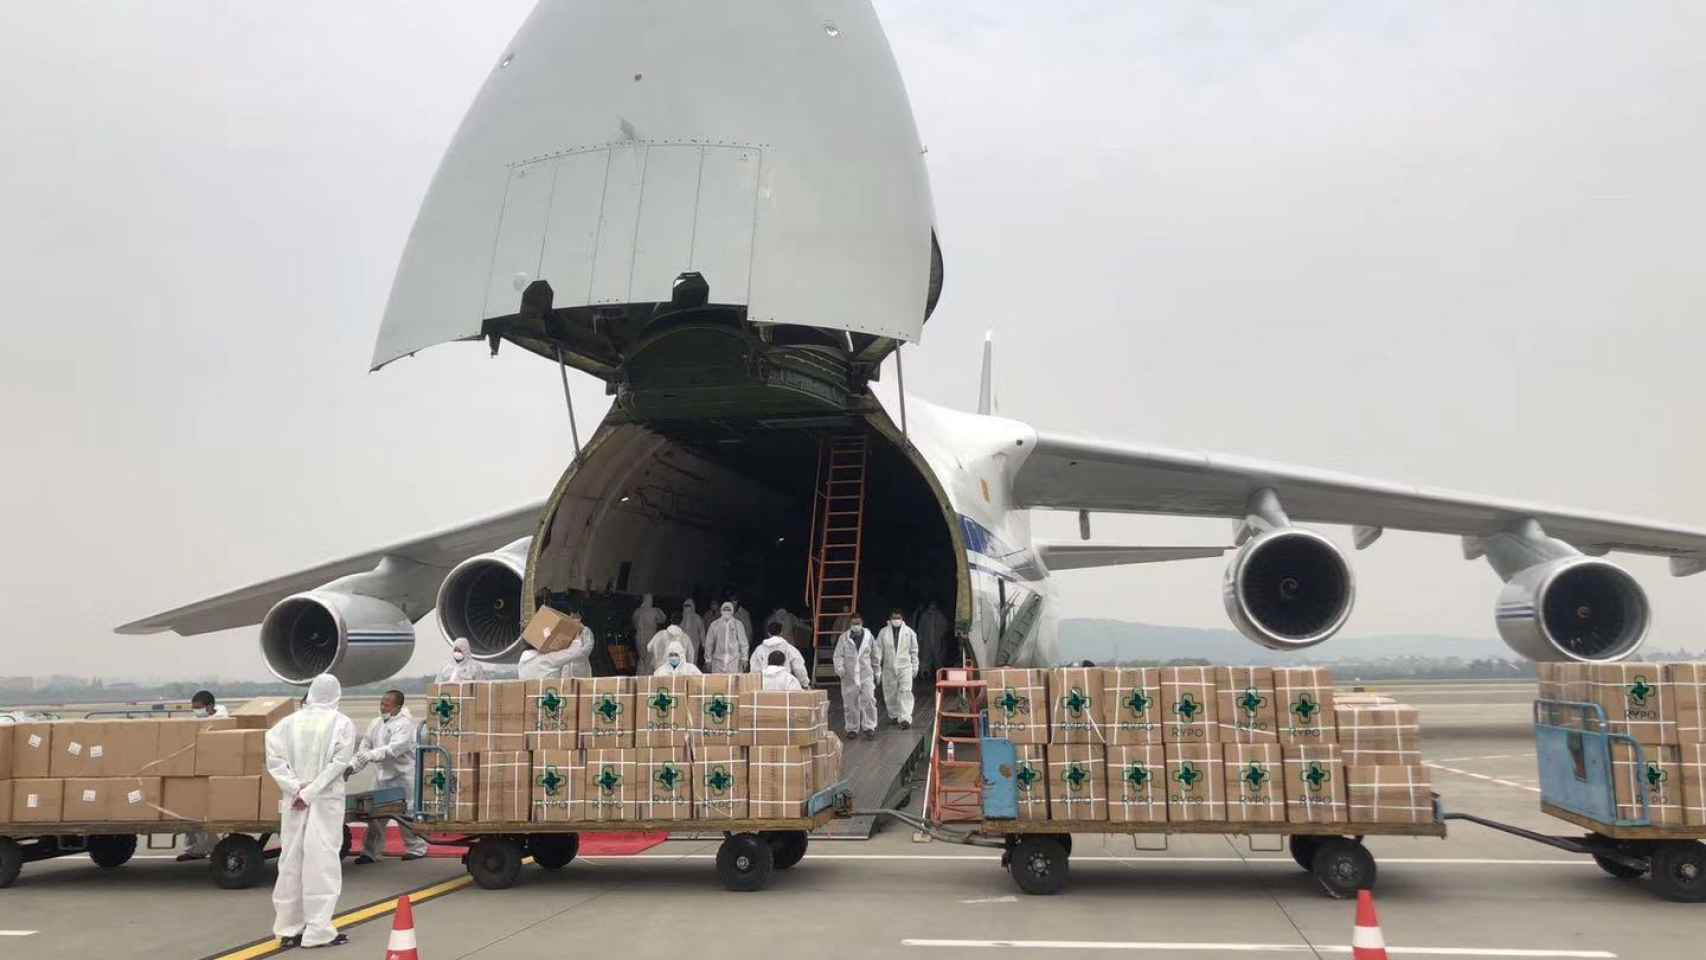 Varias personas descargando material sanitario de Rypo de un avión.